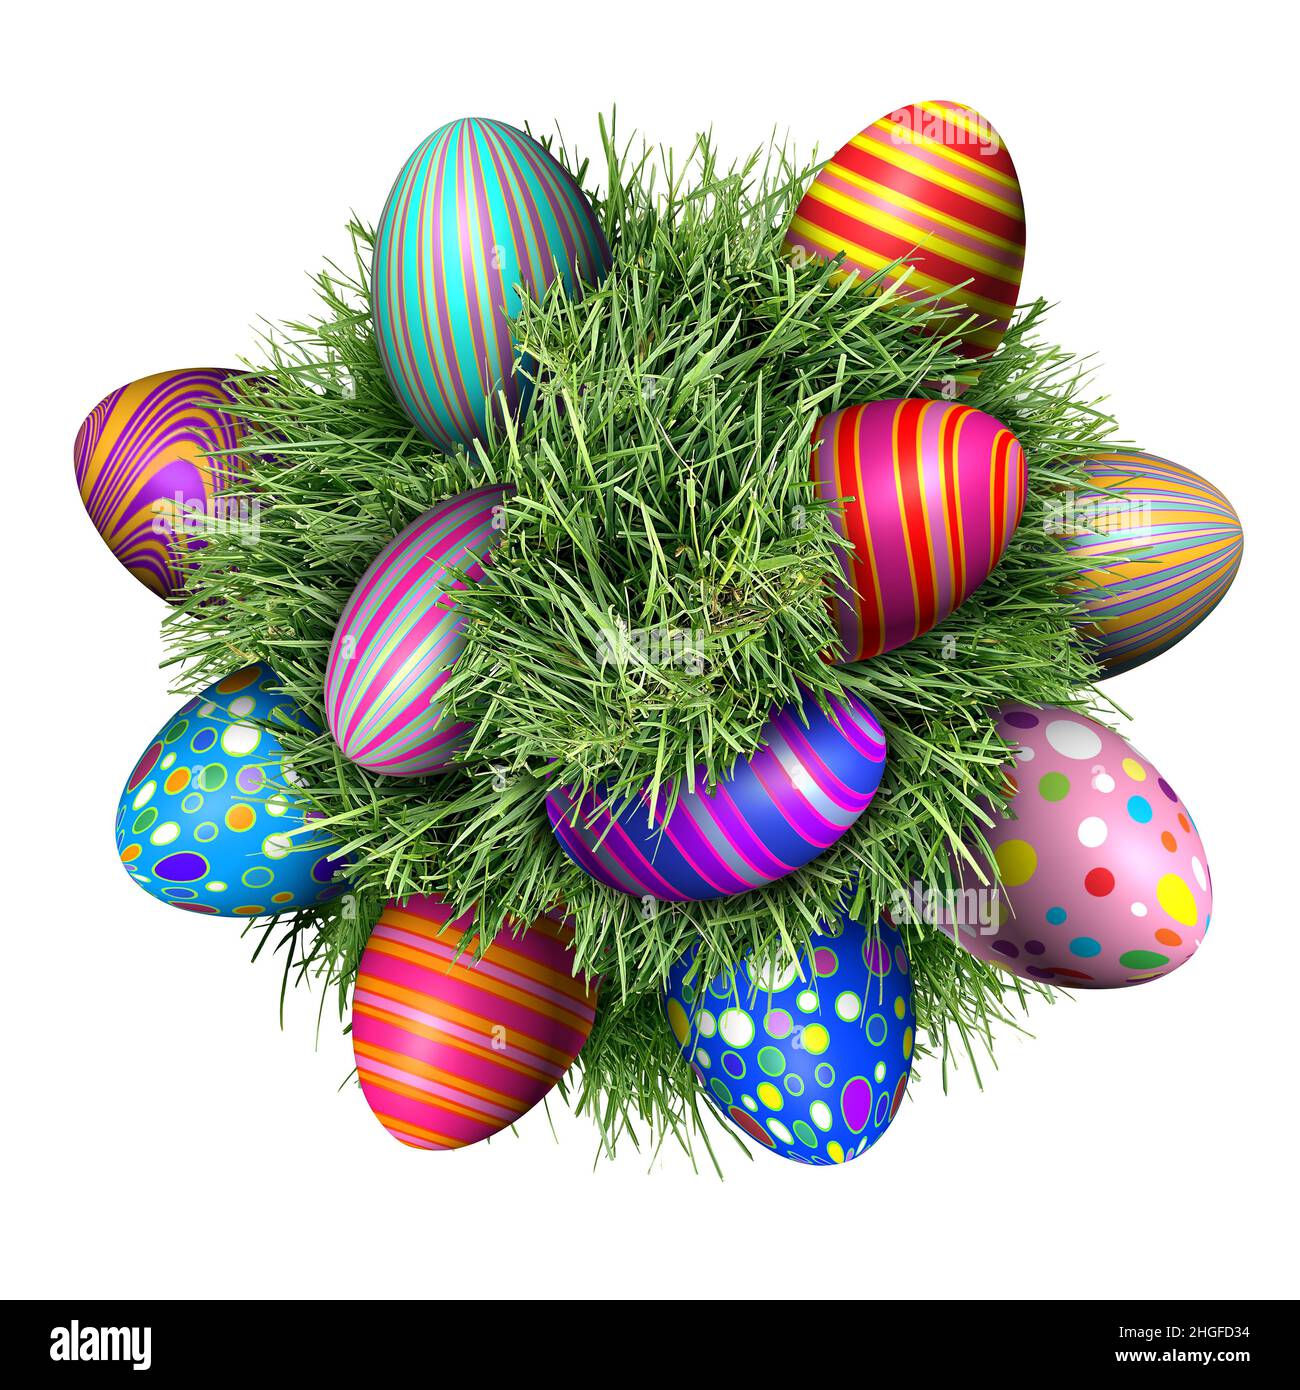 Ostereiersuche mit verzierten Eiern, die in einem grünen Grasball sitzen, als Symbol für den Frühling und als festliche Dekoration und Design-Element für die Feiertage im April. Stockfoto